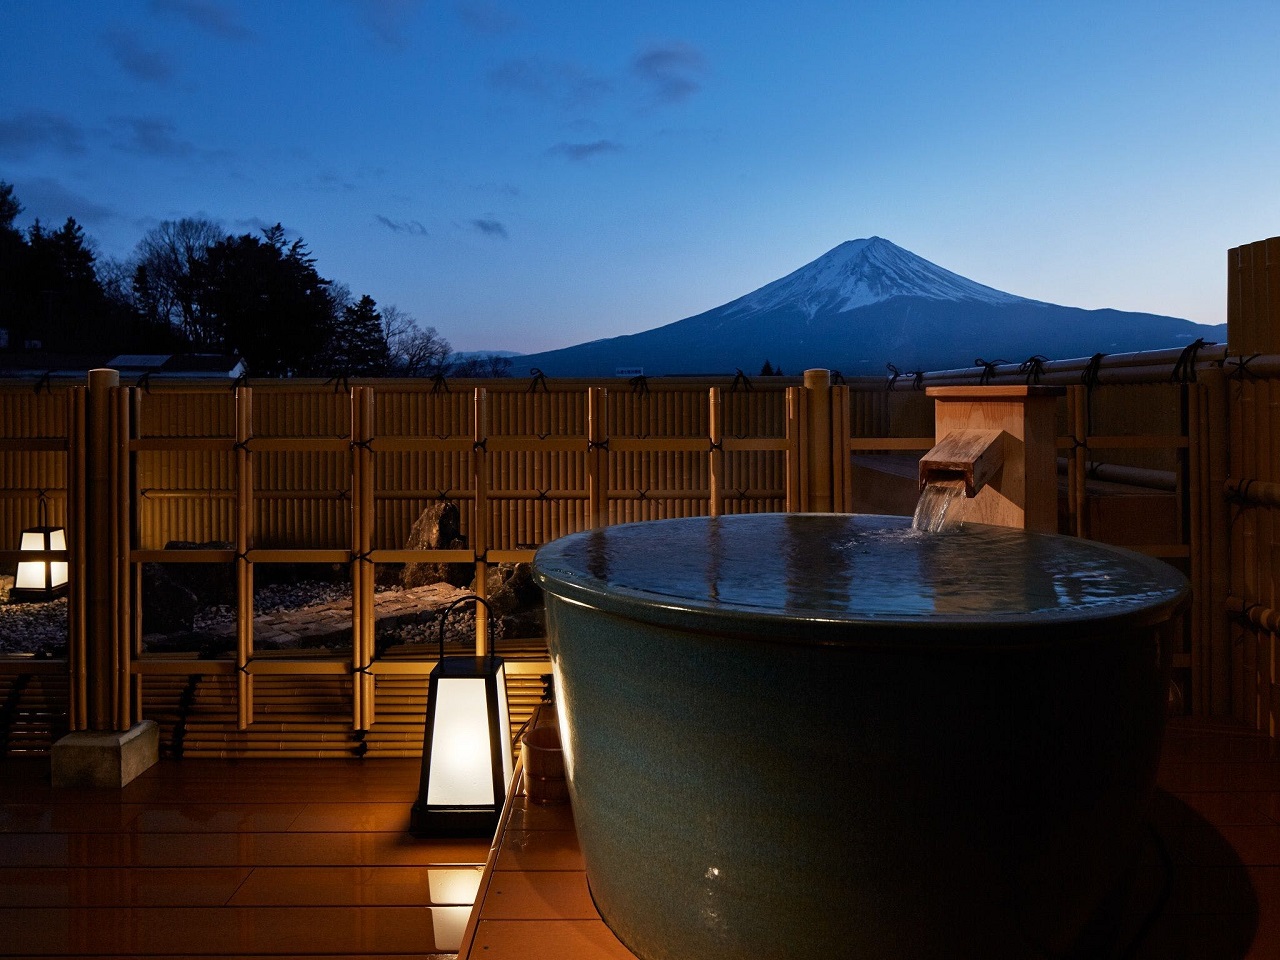 น้ำพุร้อน ยามานาชิ โรงแรม ภูเขาไฟฟูจิ